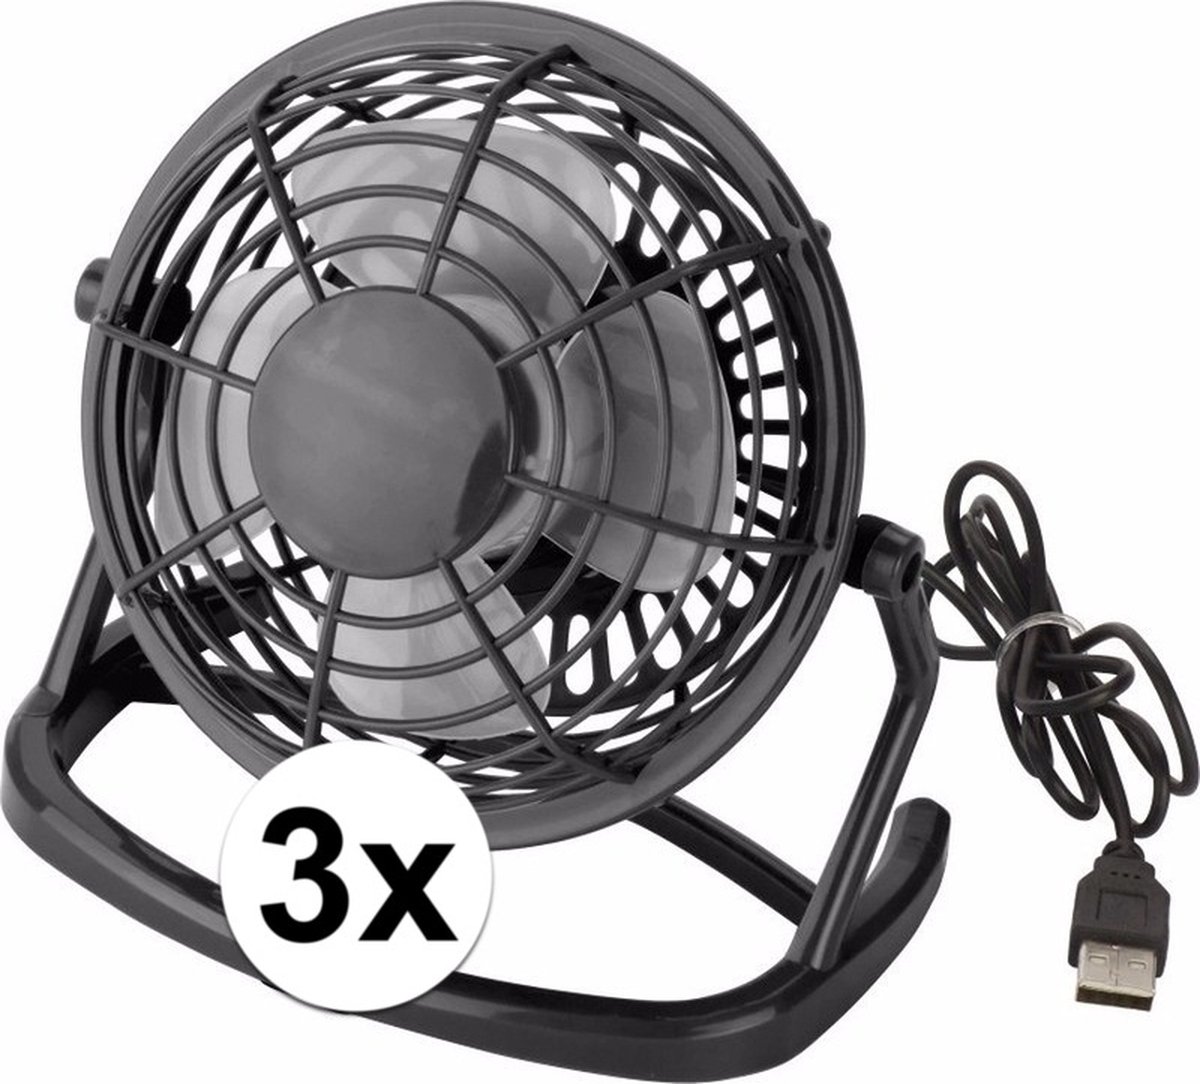 3x Zwarte ventilator met USB stekker - Bureau ventilatoren 3 stuks